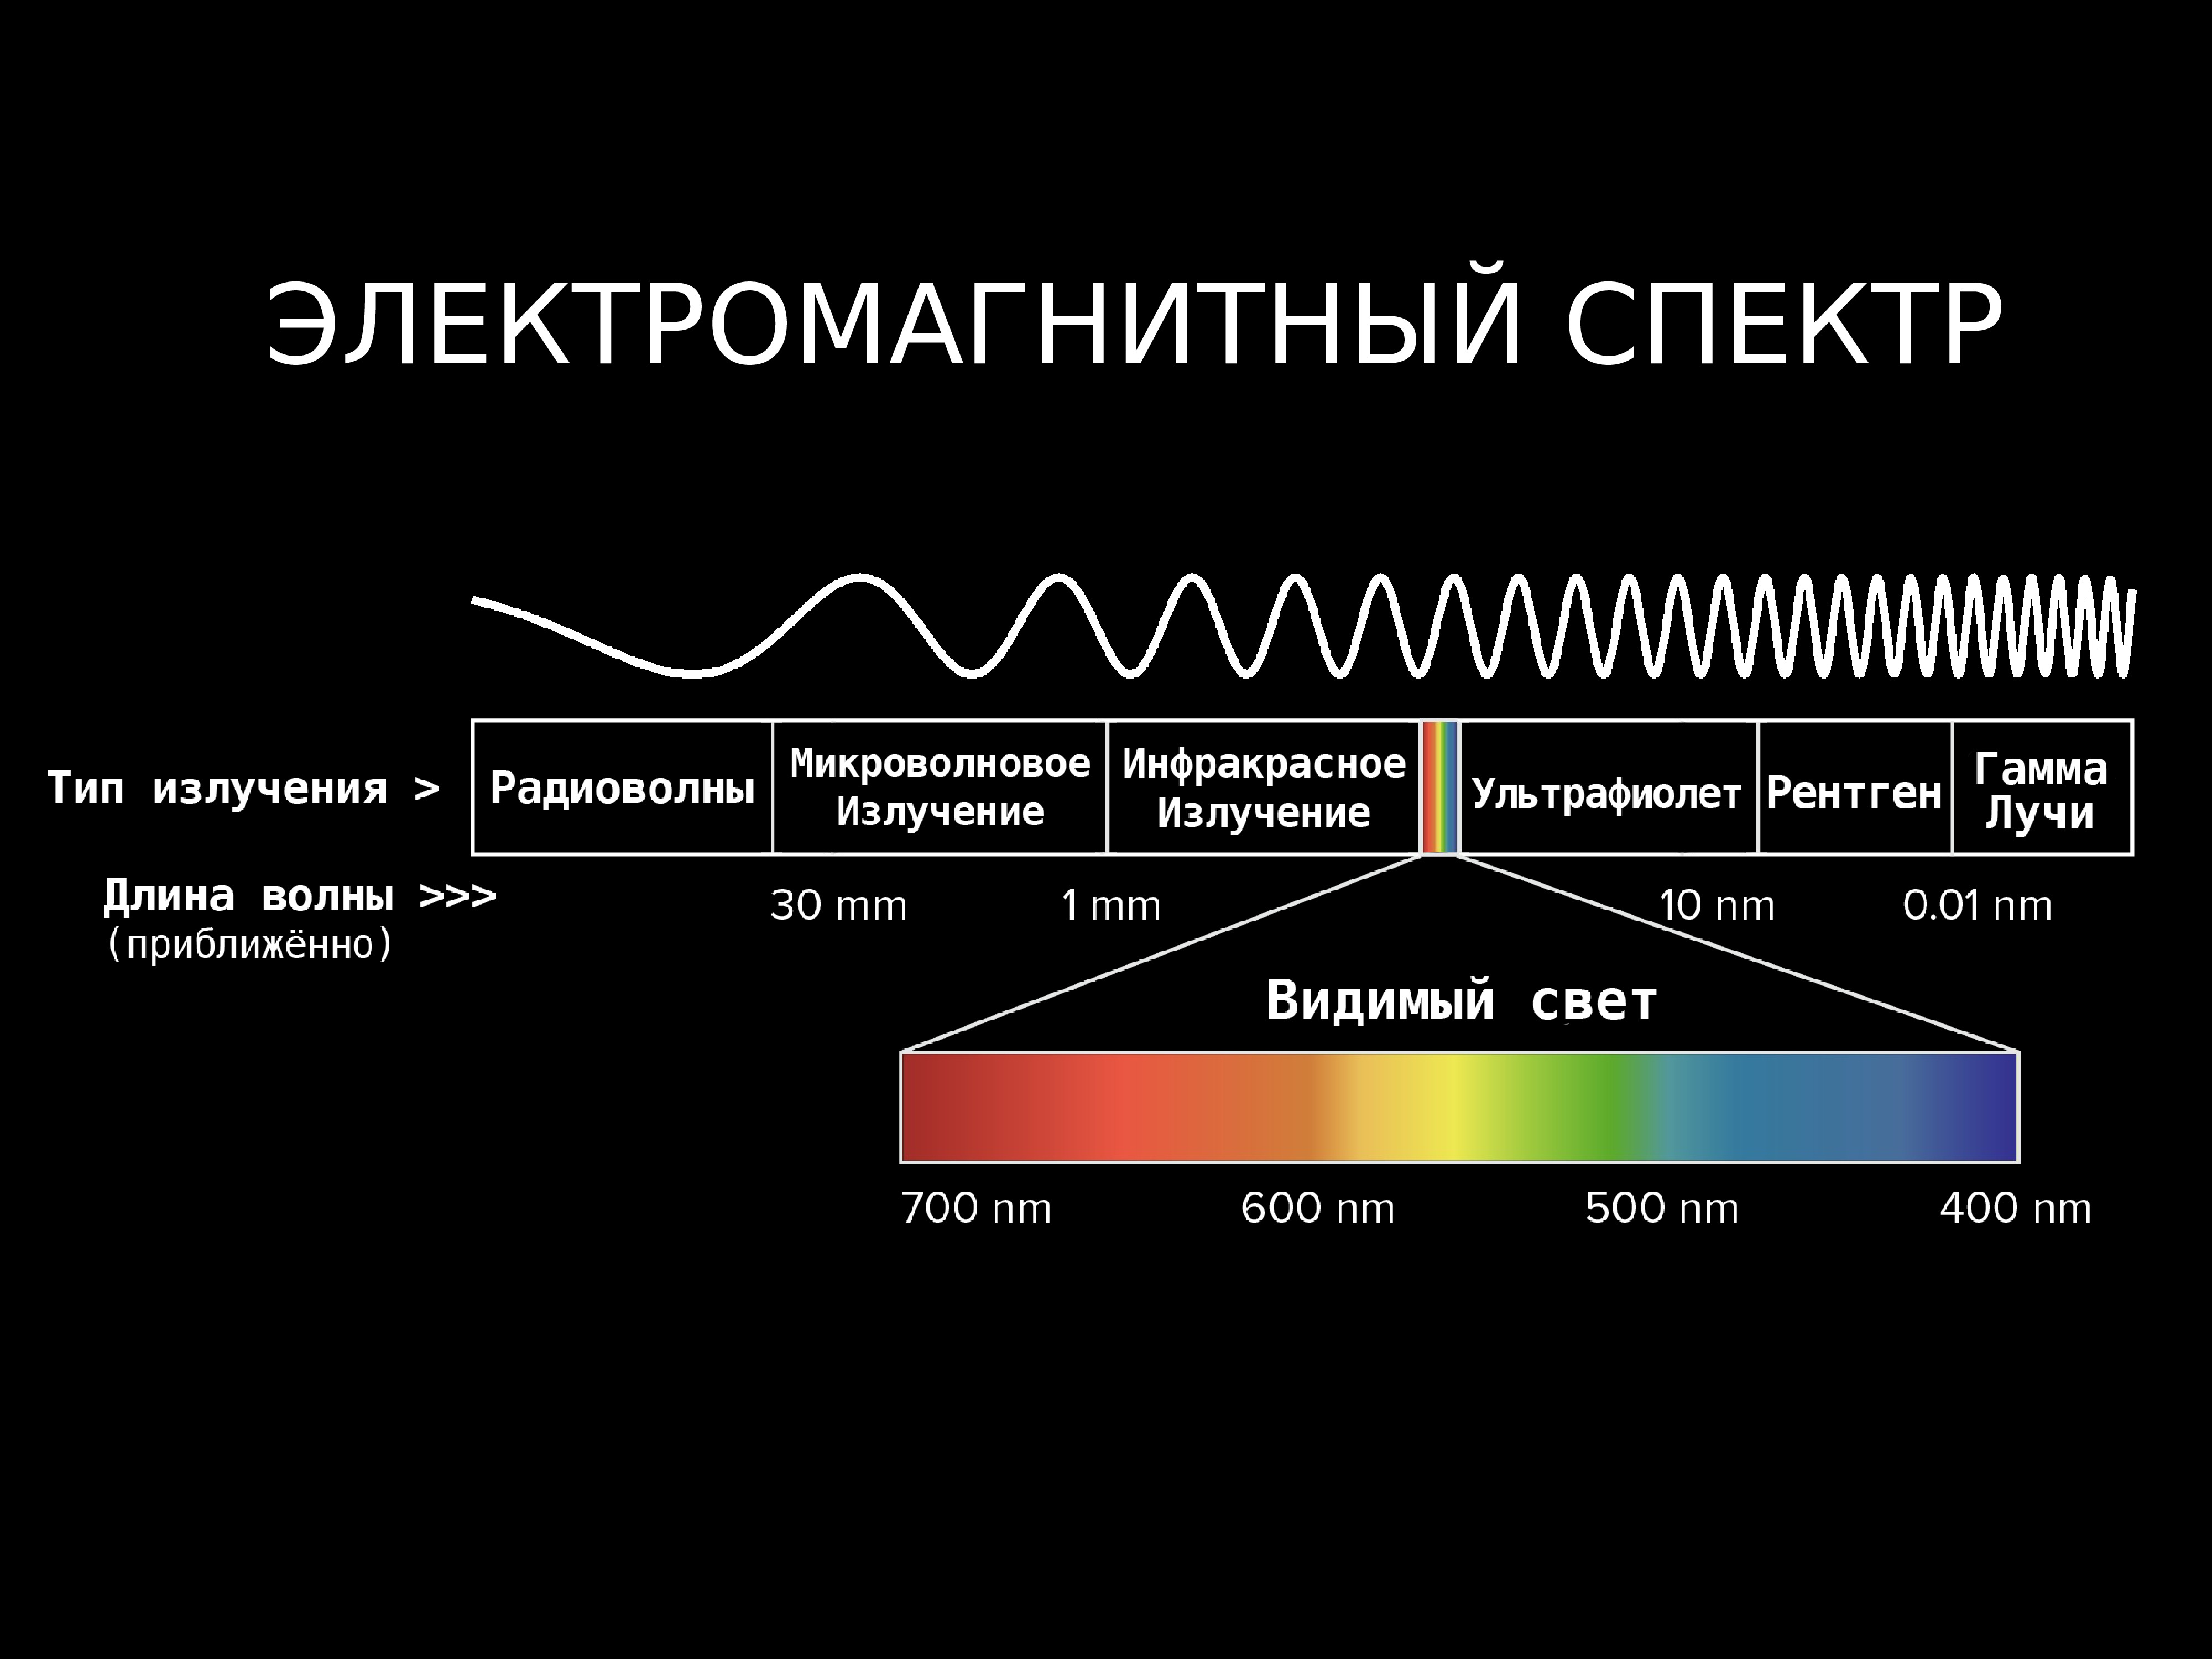 Электромагнитные волны с максимальной частотой. Диапазоны спектра электромагнитного излучения. Электромагнитное излучение спектр электромагнитного излучения. Спектр длин волн электромагнитных излучений. Длина волны электромагнитного излучения.